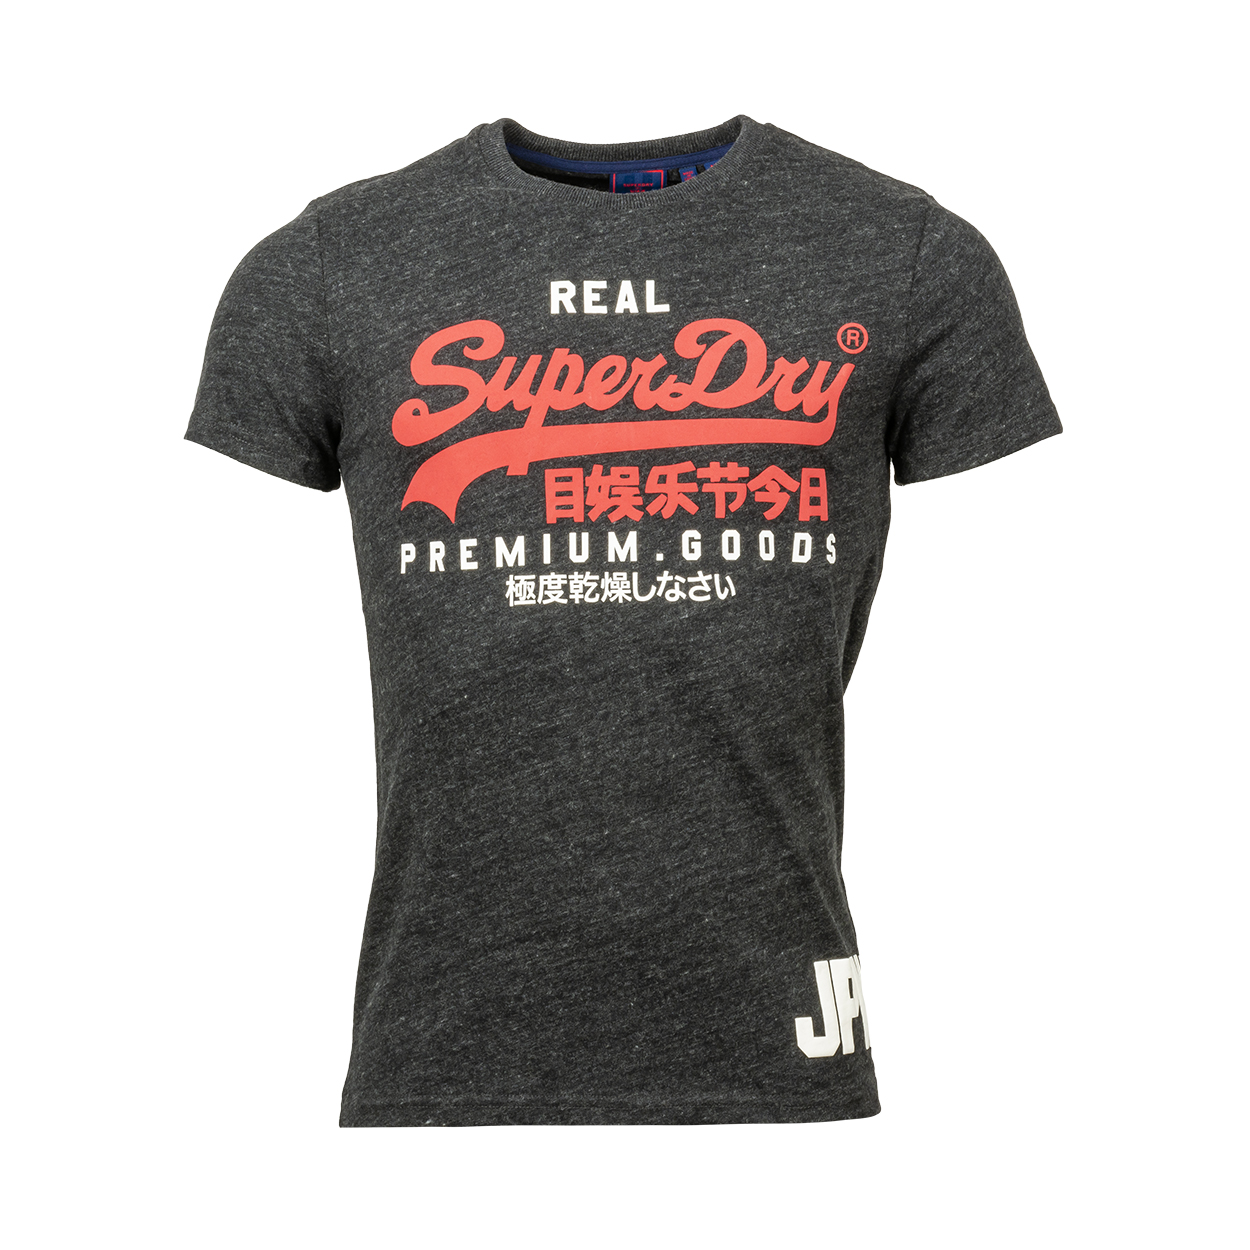 Tee-shirt col rond Superdry en coton mélangé gris anthracite chiné floqué en rouge et blanc